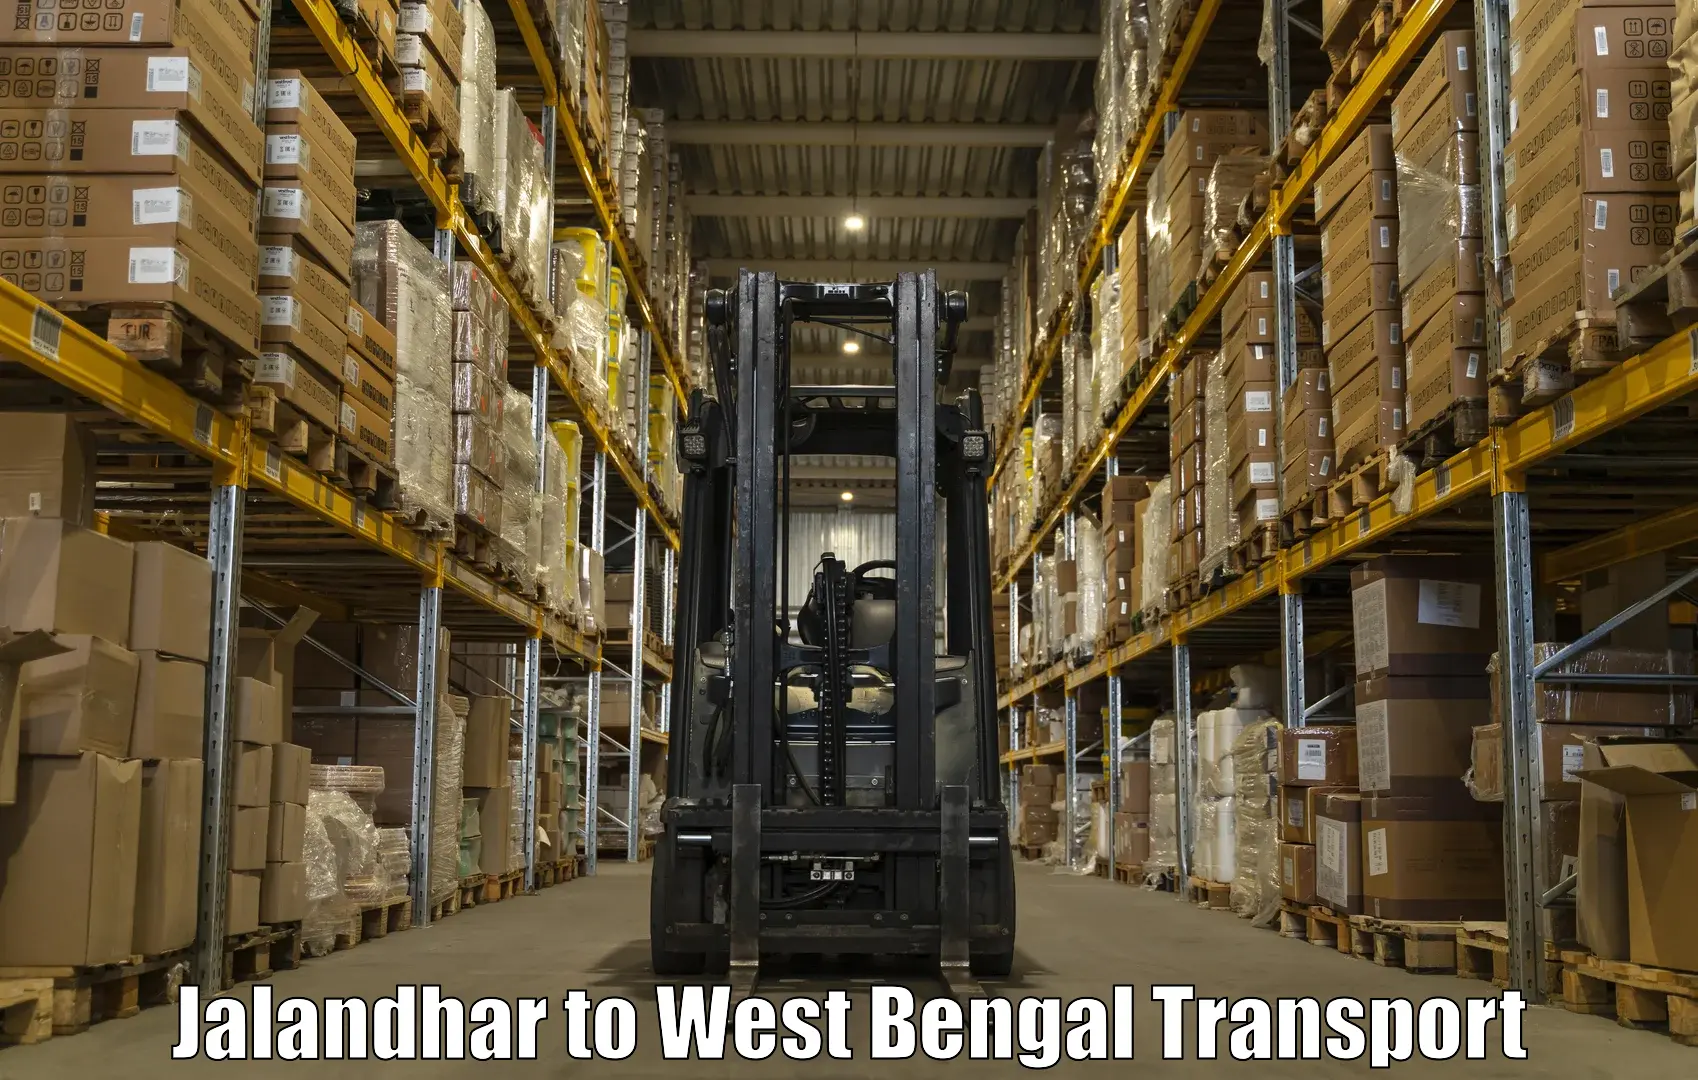 Furniture transport service Jalandhar to Barrackpore